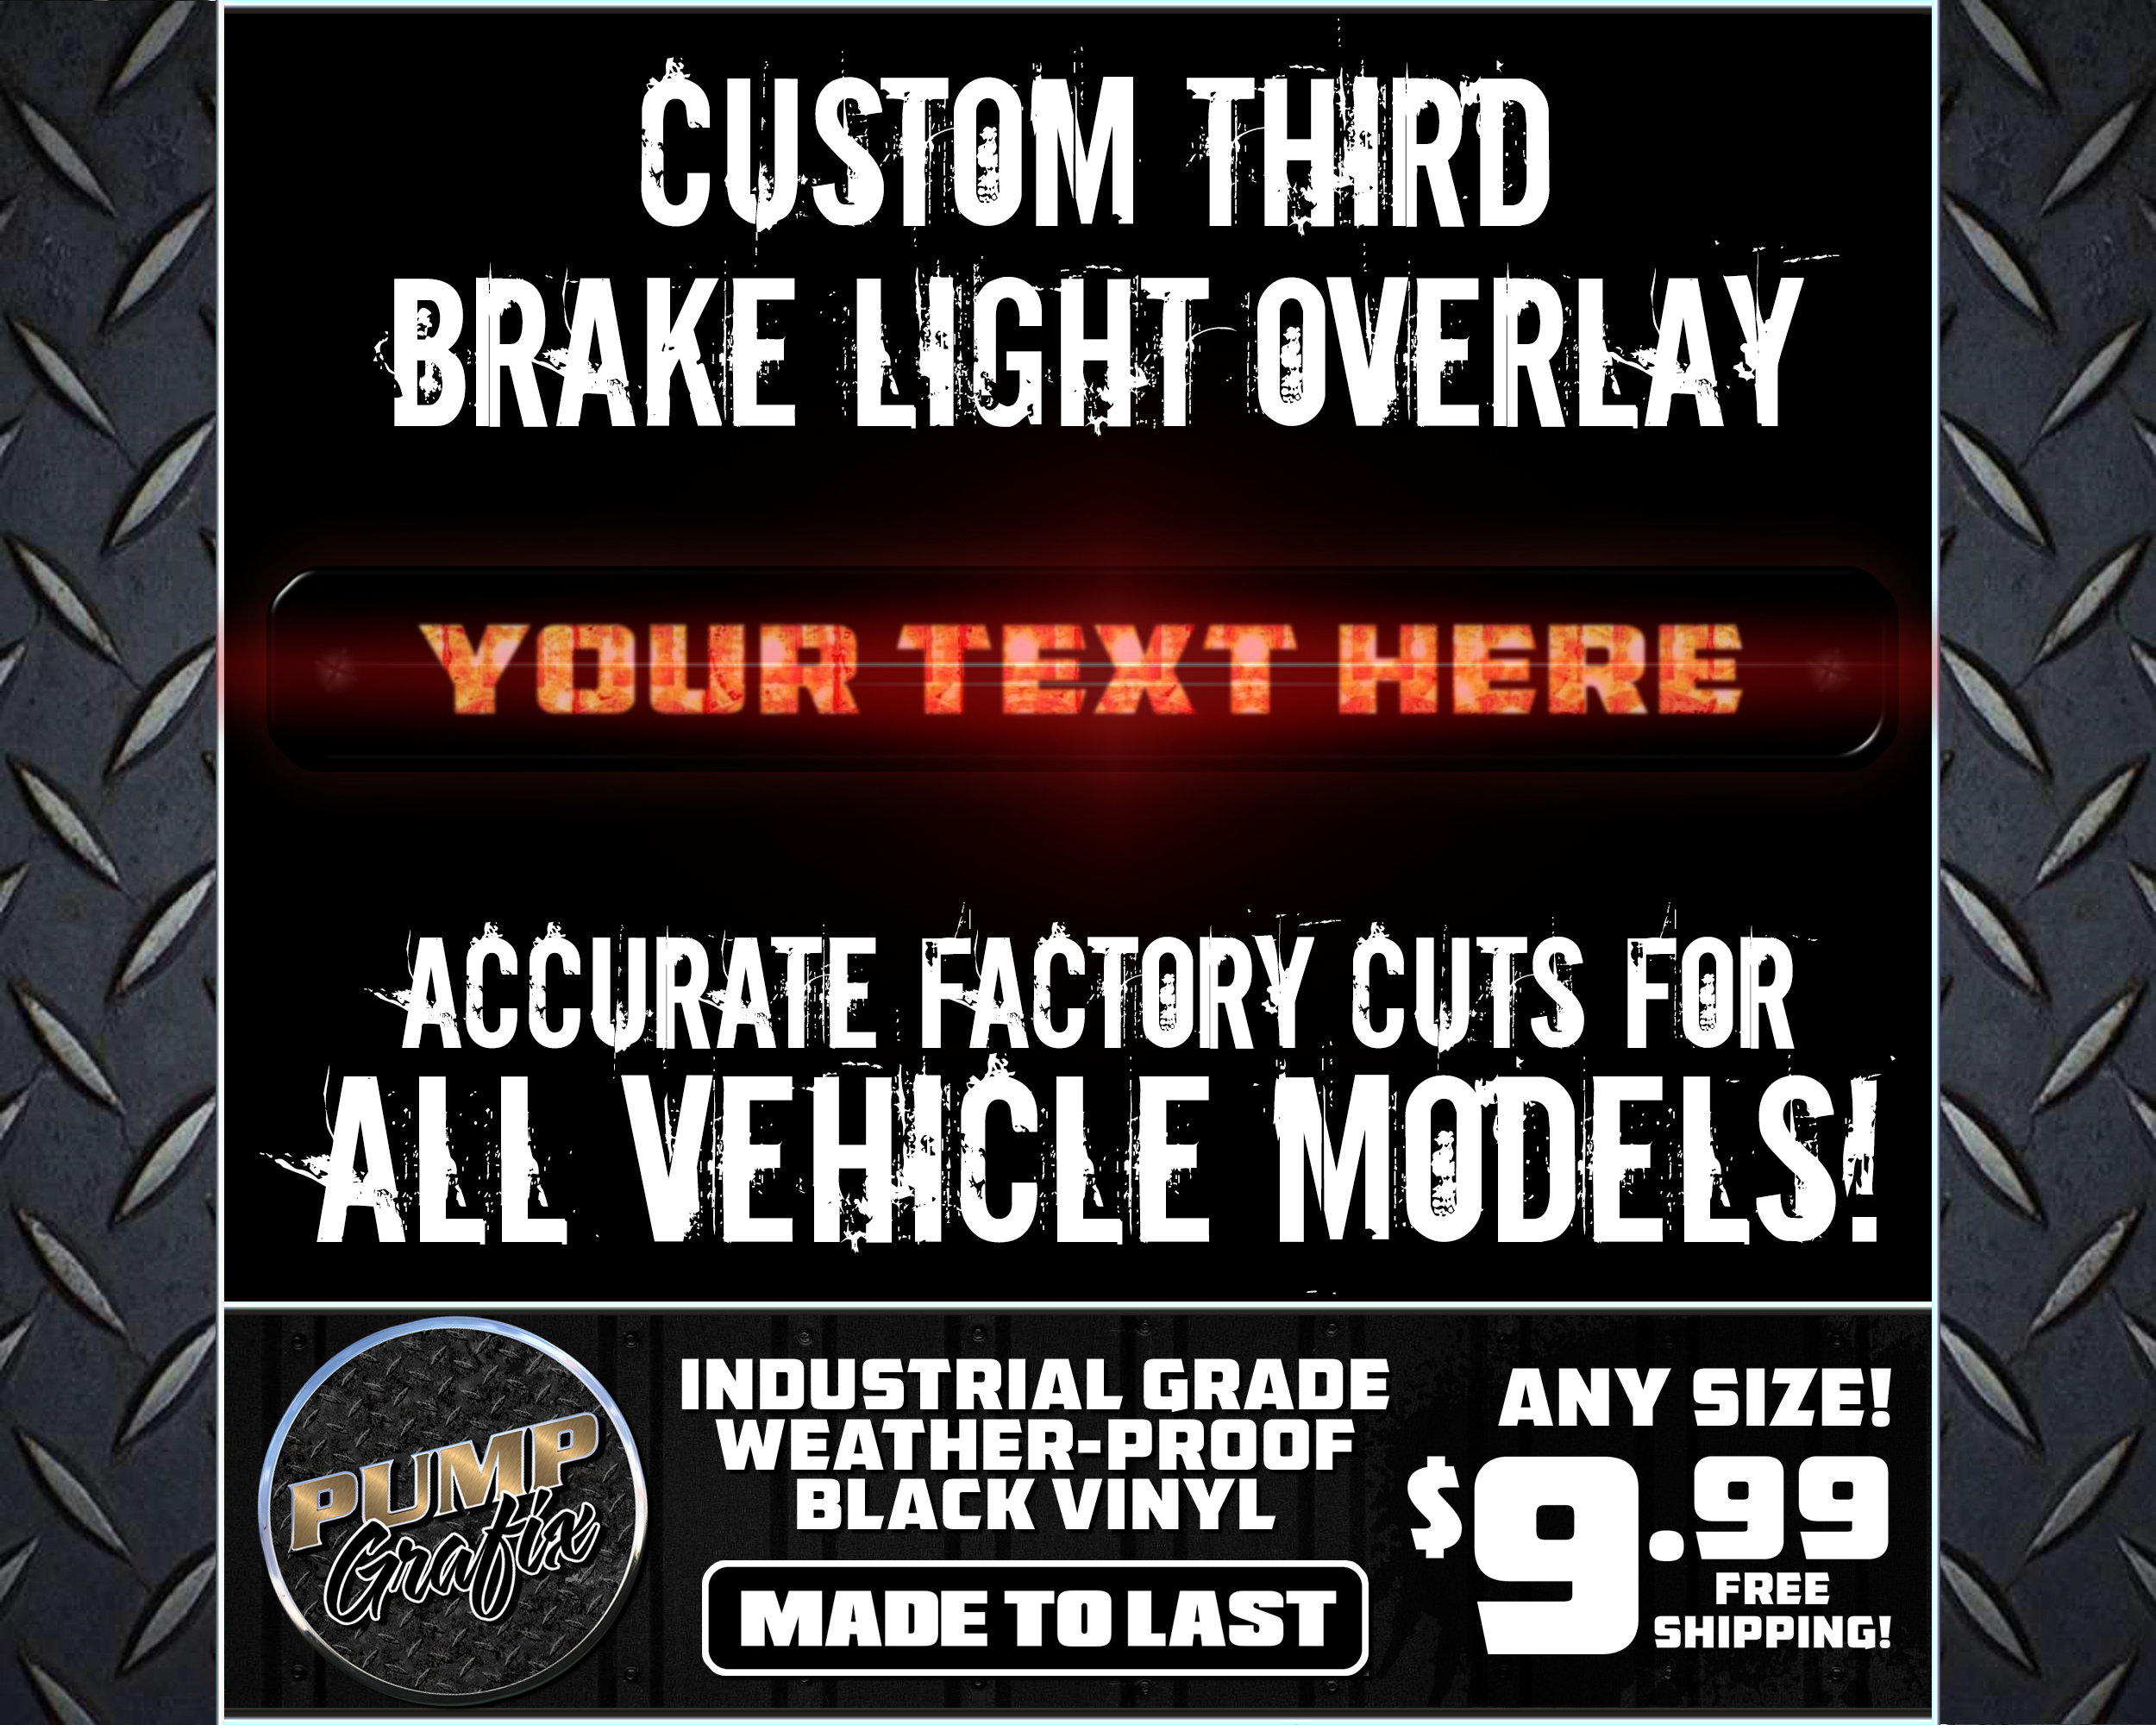 3rd brake light for sale  